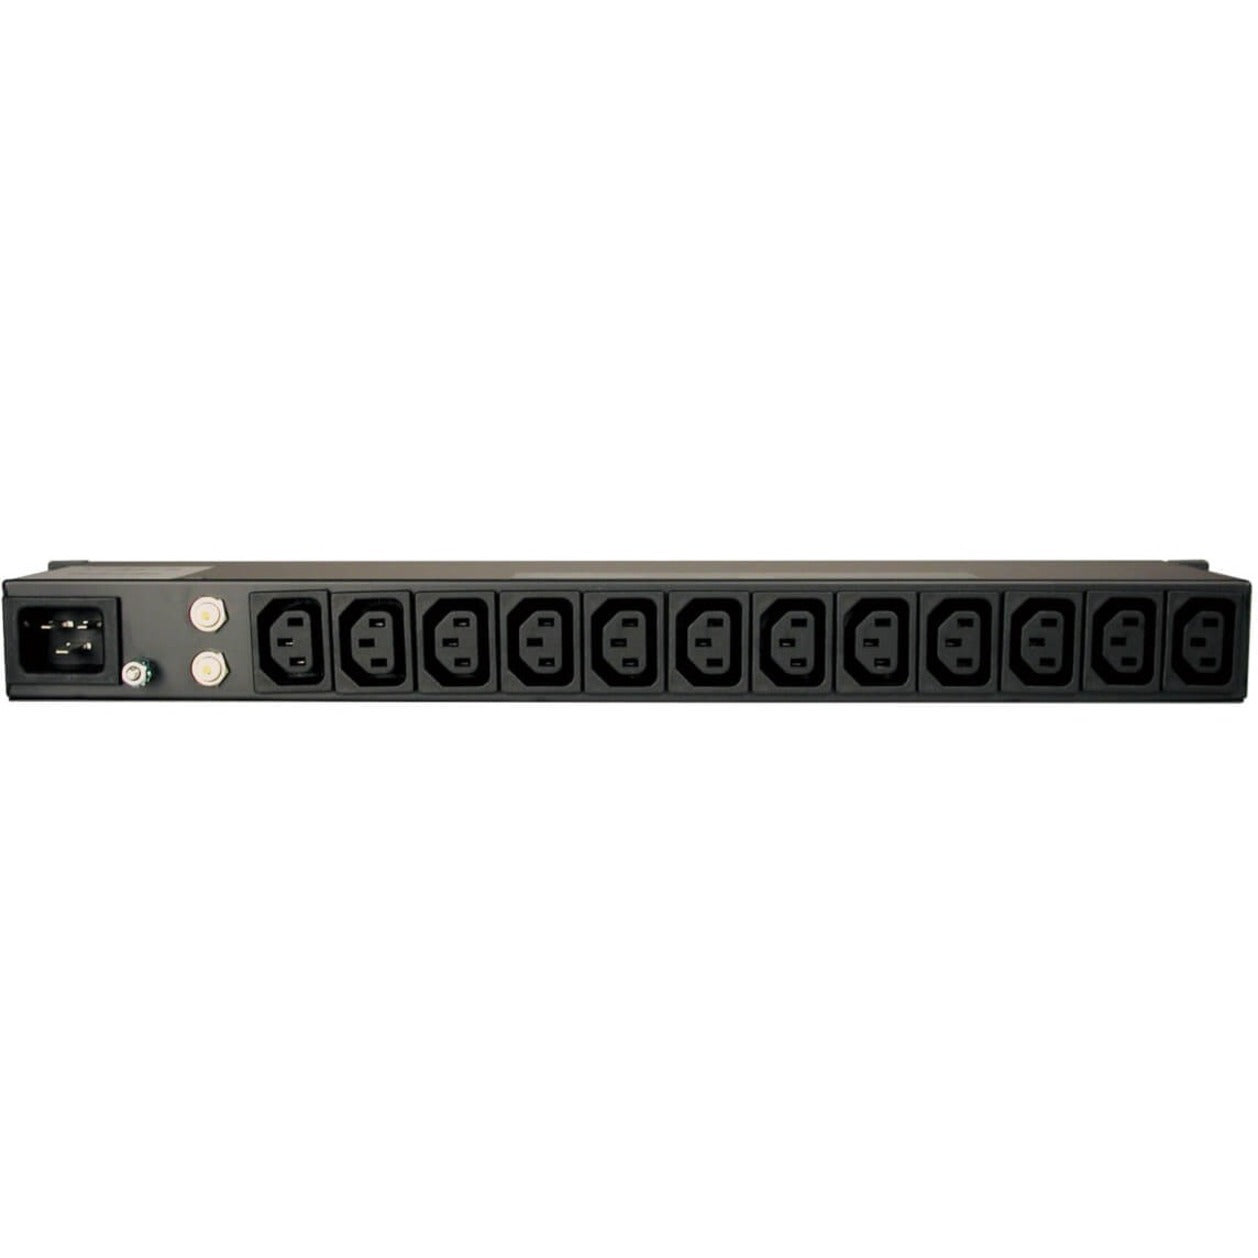 Tripp Lite PDU12IEC Power Distribution Unit, 100-240V Compatible, 1U Rackmount, 16A 14 Outlet